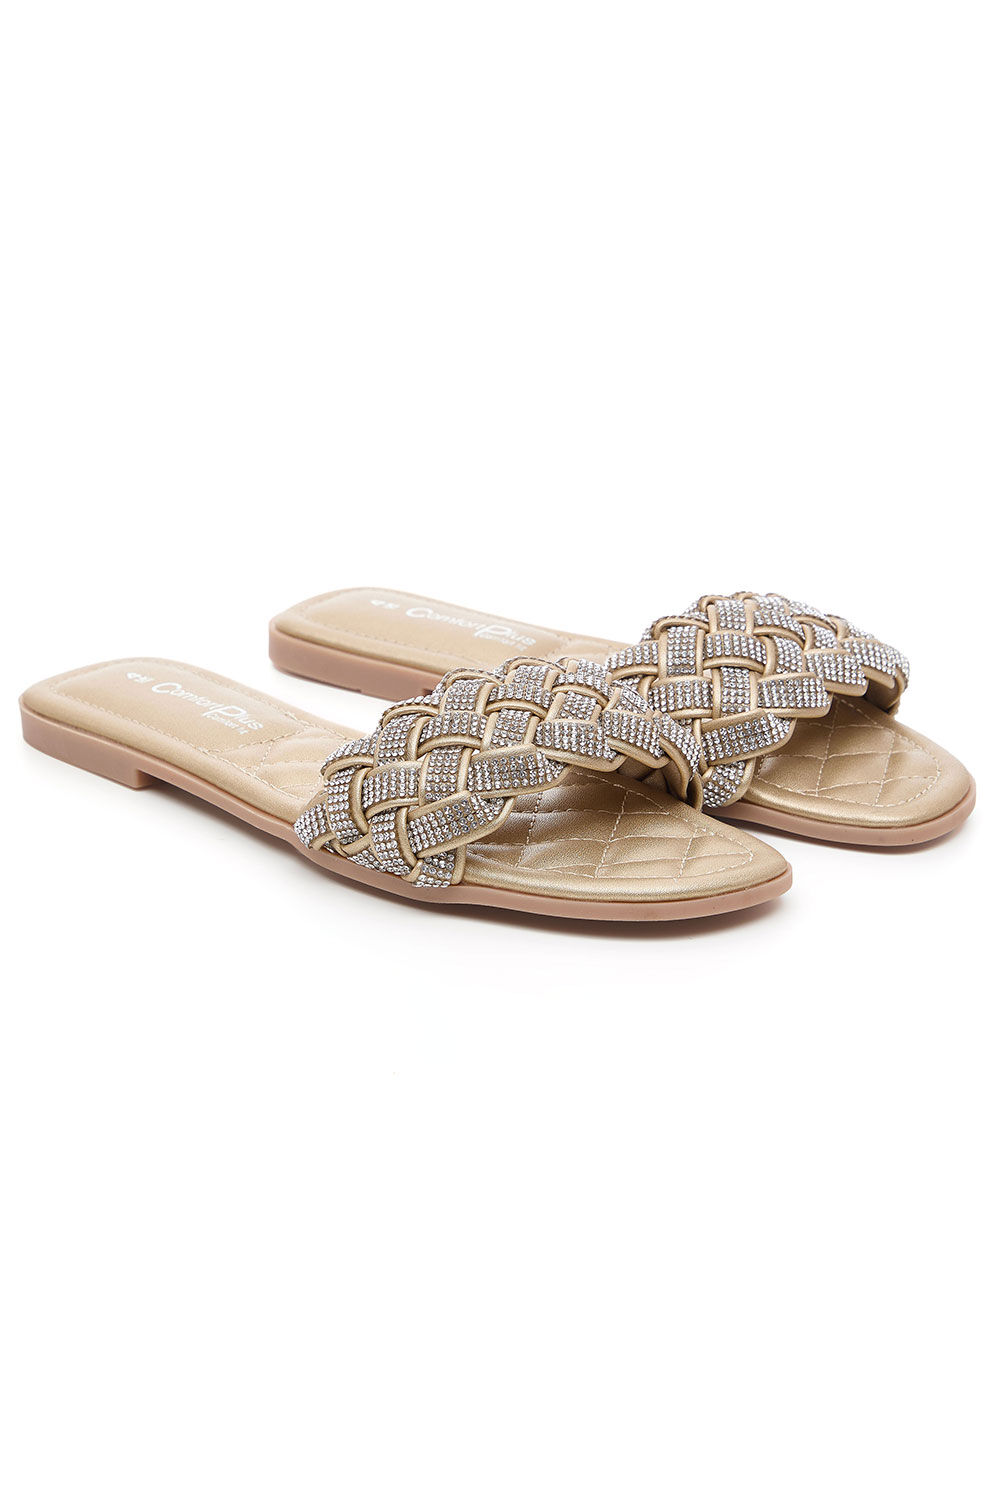 Comfort Plus Bronze - Diamante Weave Front Band Flat Sandals, Size: 8